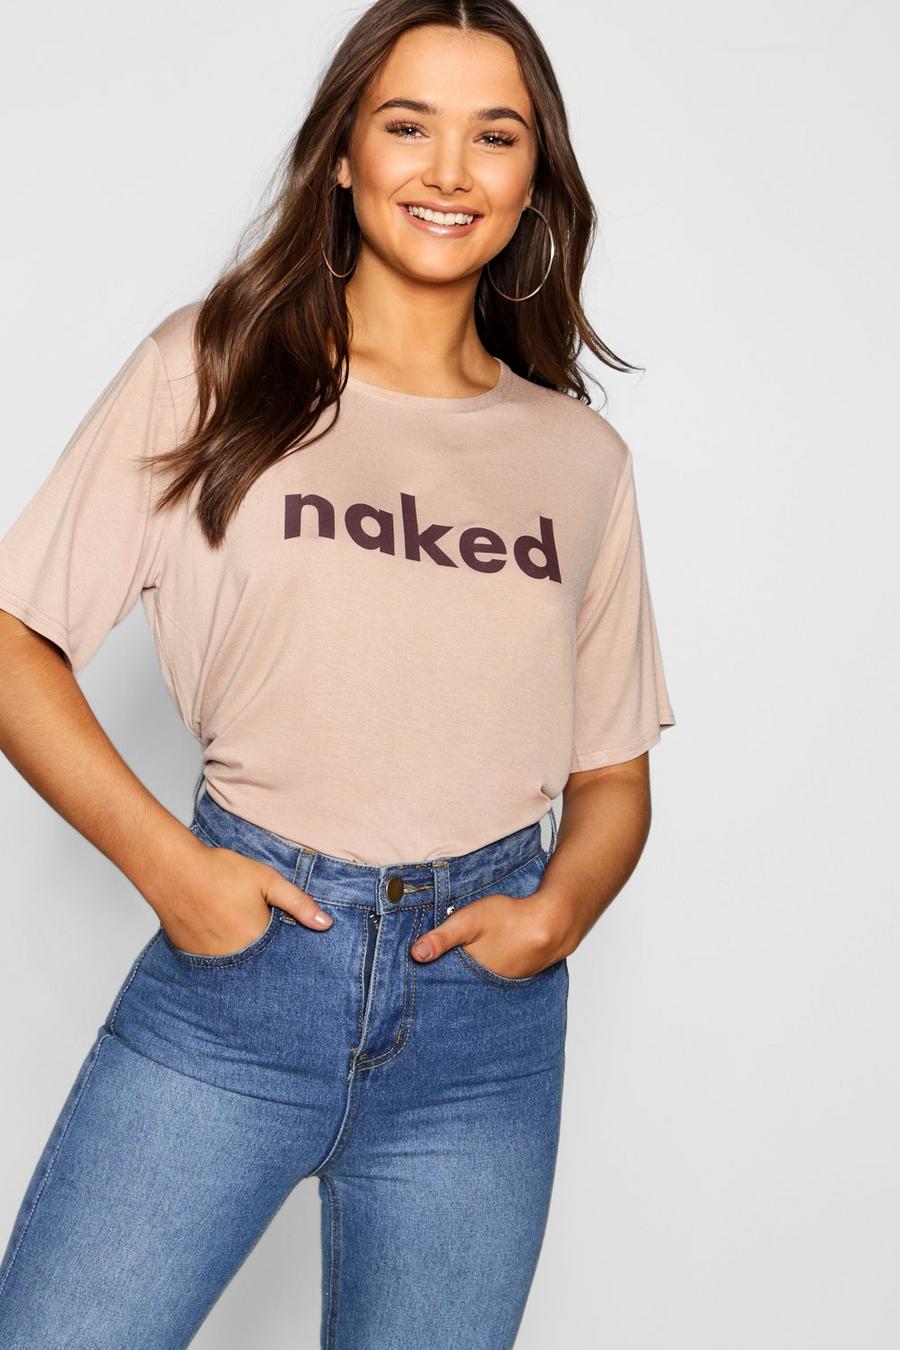 Camiseta con estampado de Naked image number 1